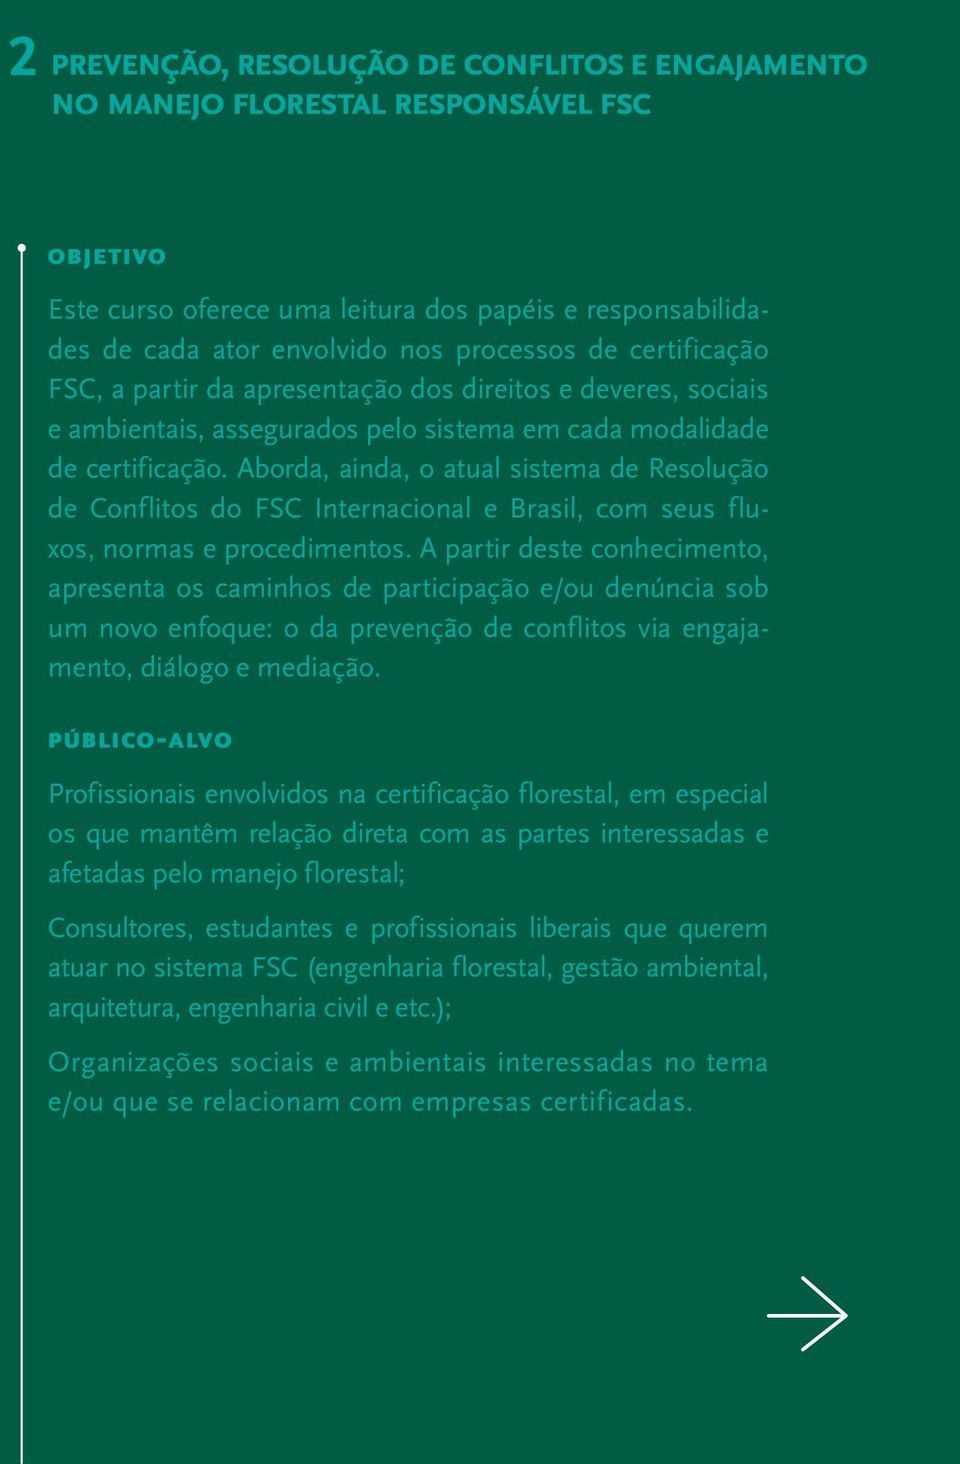 Aborda, ainda, o atual sistema de Resolução de Conflitos do FSC Internacional e Brasil, com seus fluxos, normas e procedimentos.